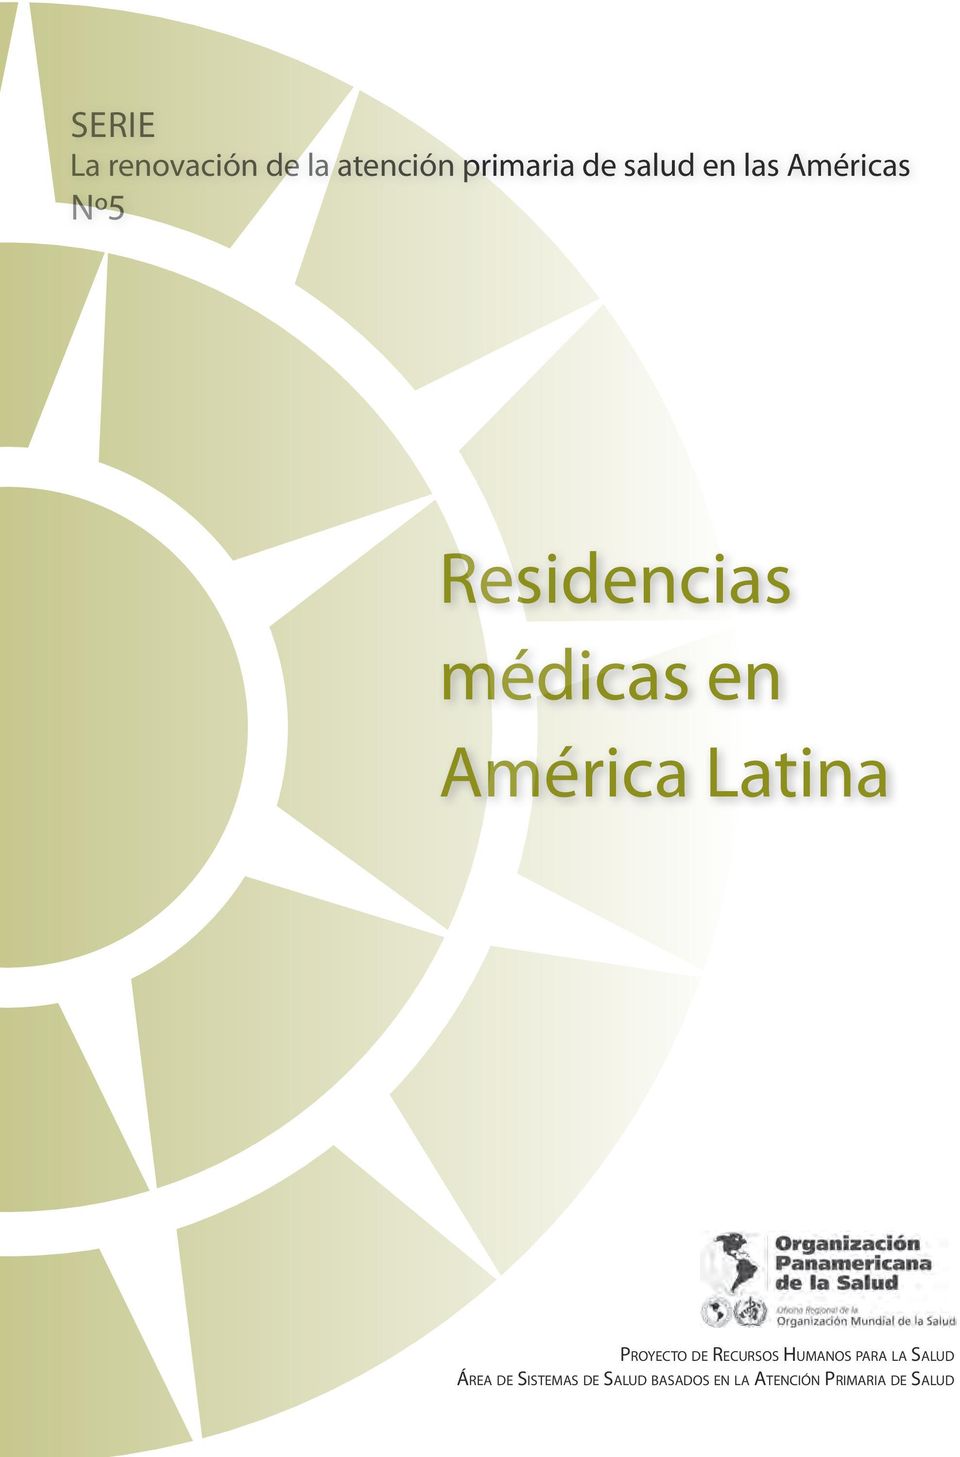 Latina Proyecto de Recursos Humanos para la Salud Área